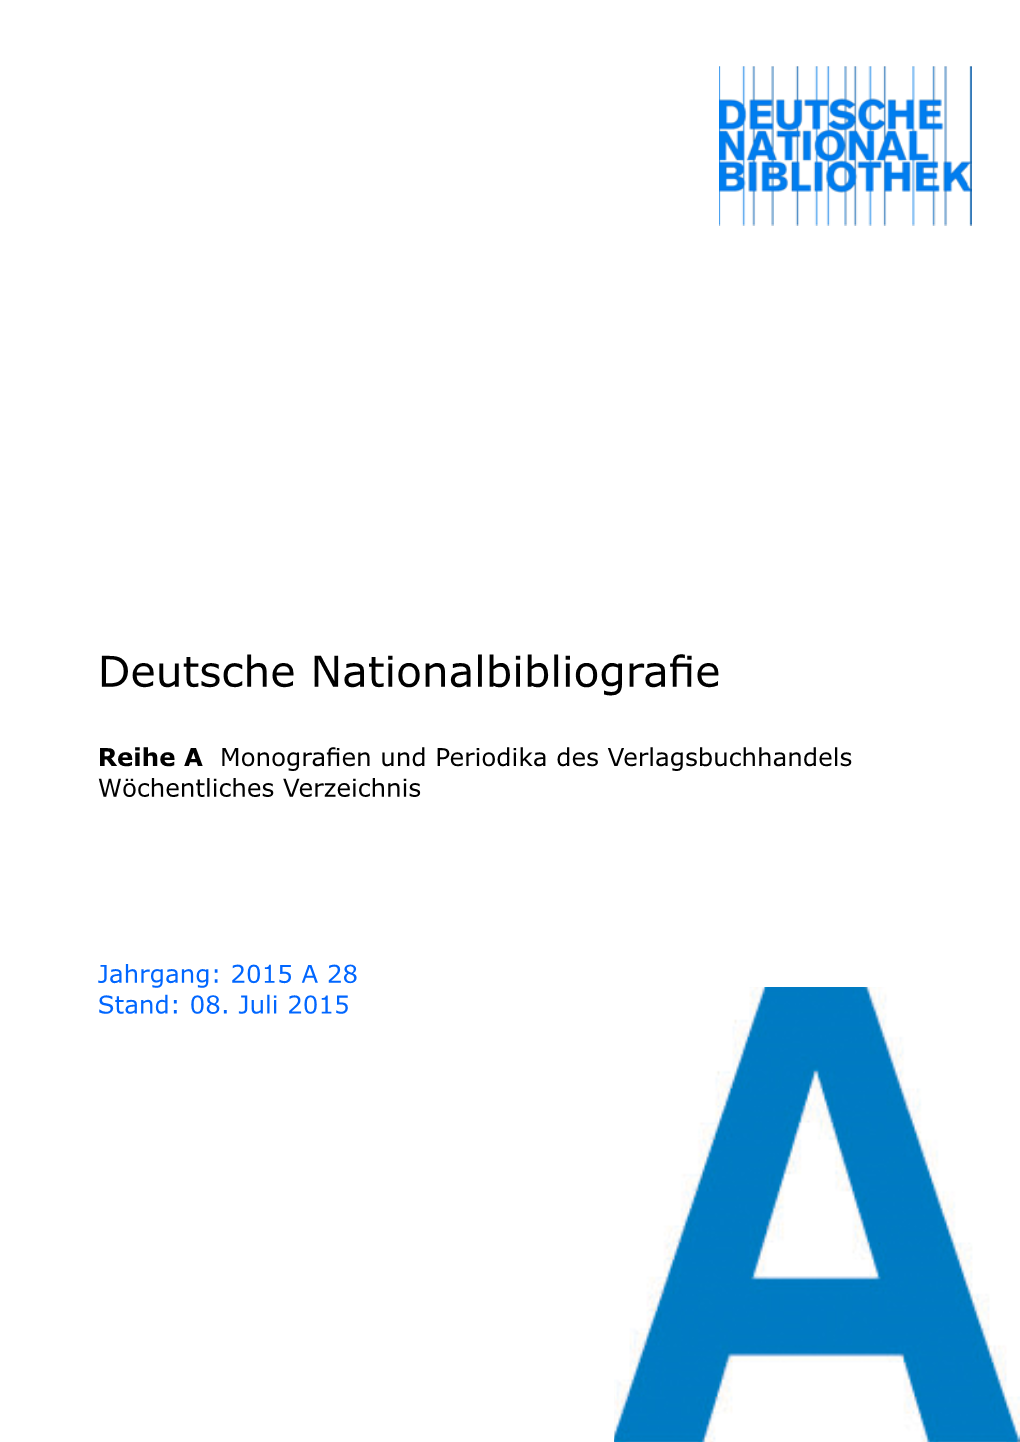 Deutsche Nationalbibliografie 2015 a 28